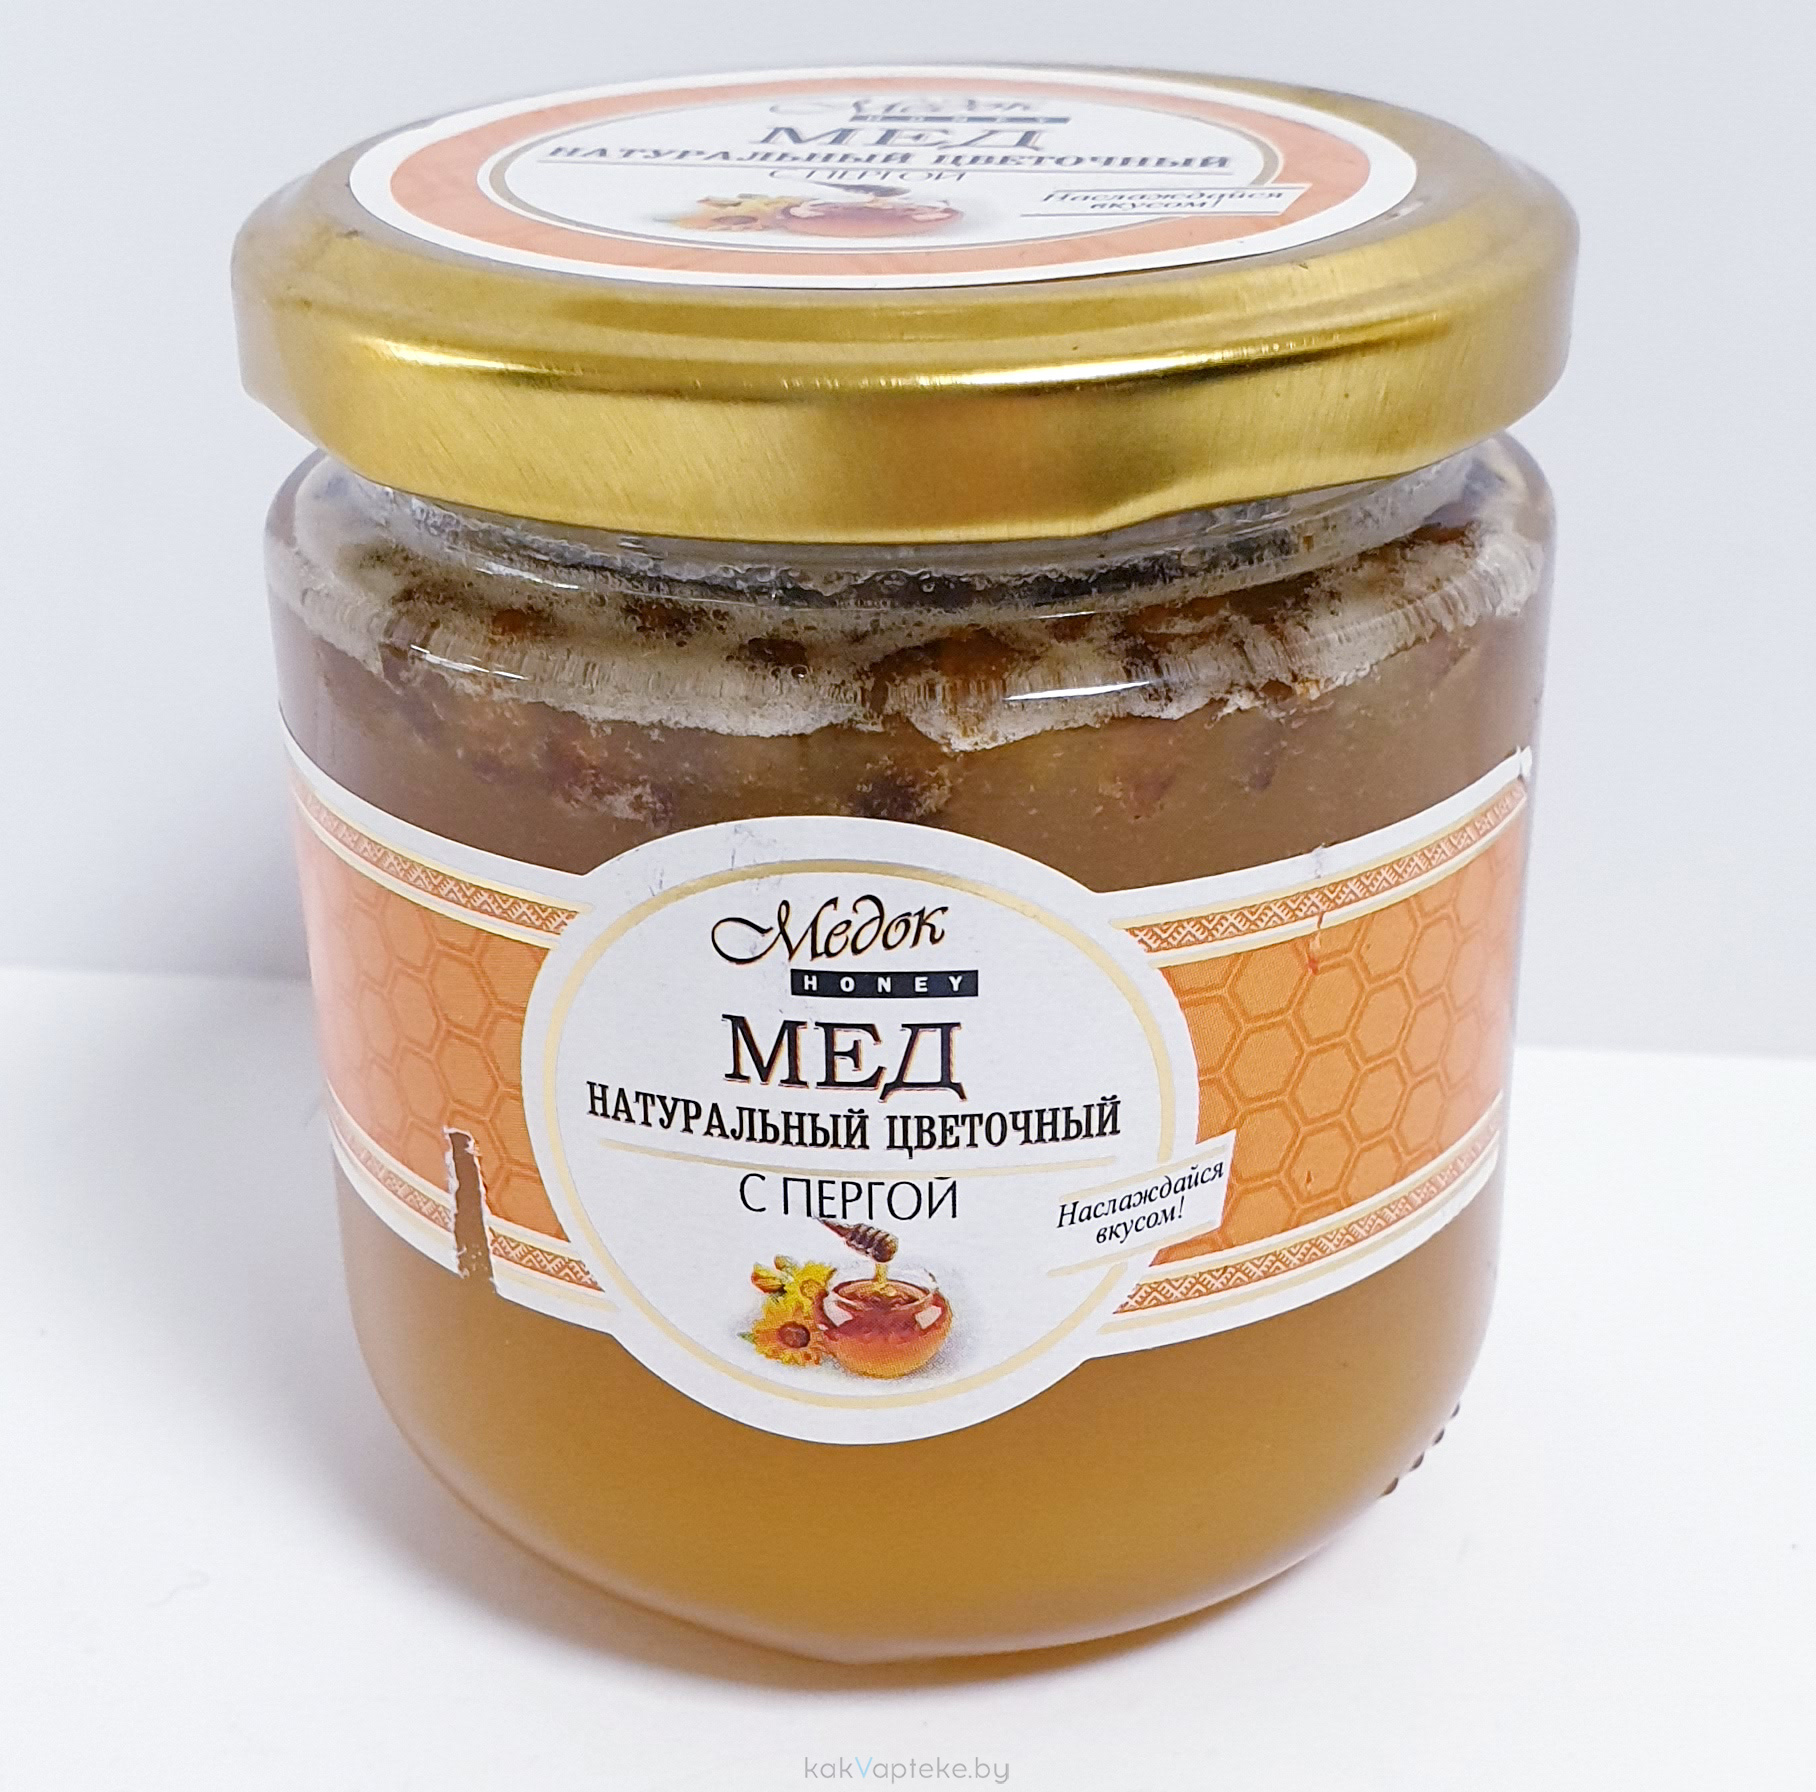 Купить мед в барнауле. Мёд натуральный. Мед натуральный цветочный с пергой. Конфитюр из меда с имбирем. Мед в сотах мед и конфитюр натуральный.